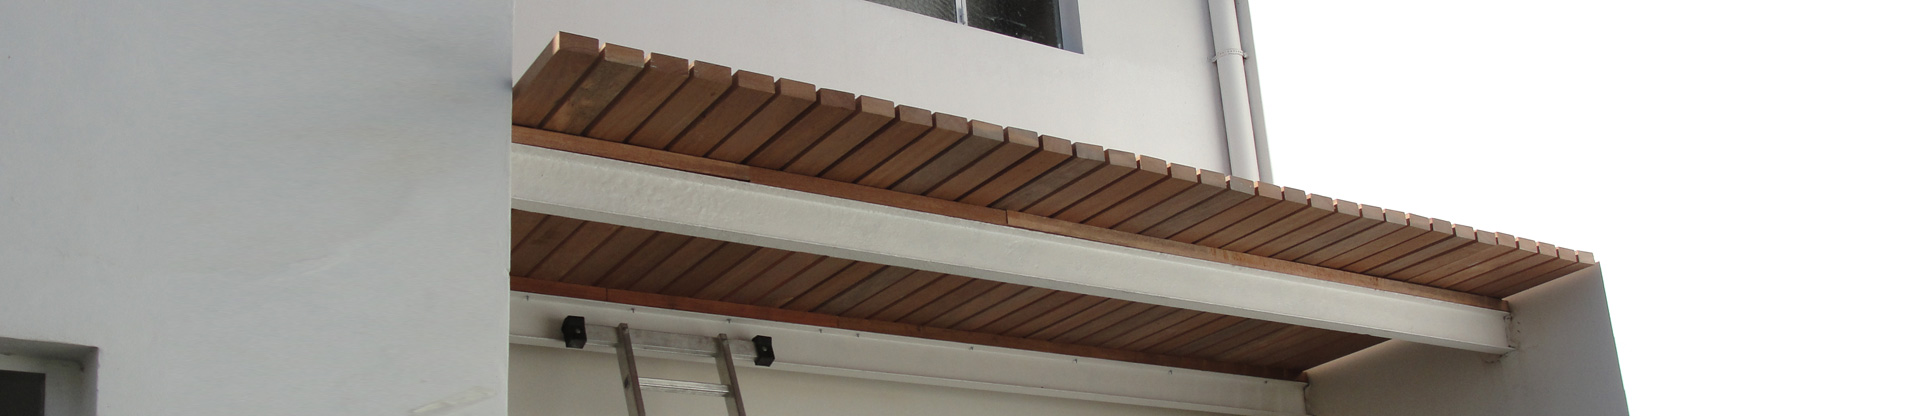 Decks de madera para exteriores o interiores 